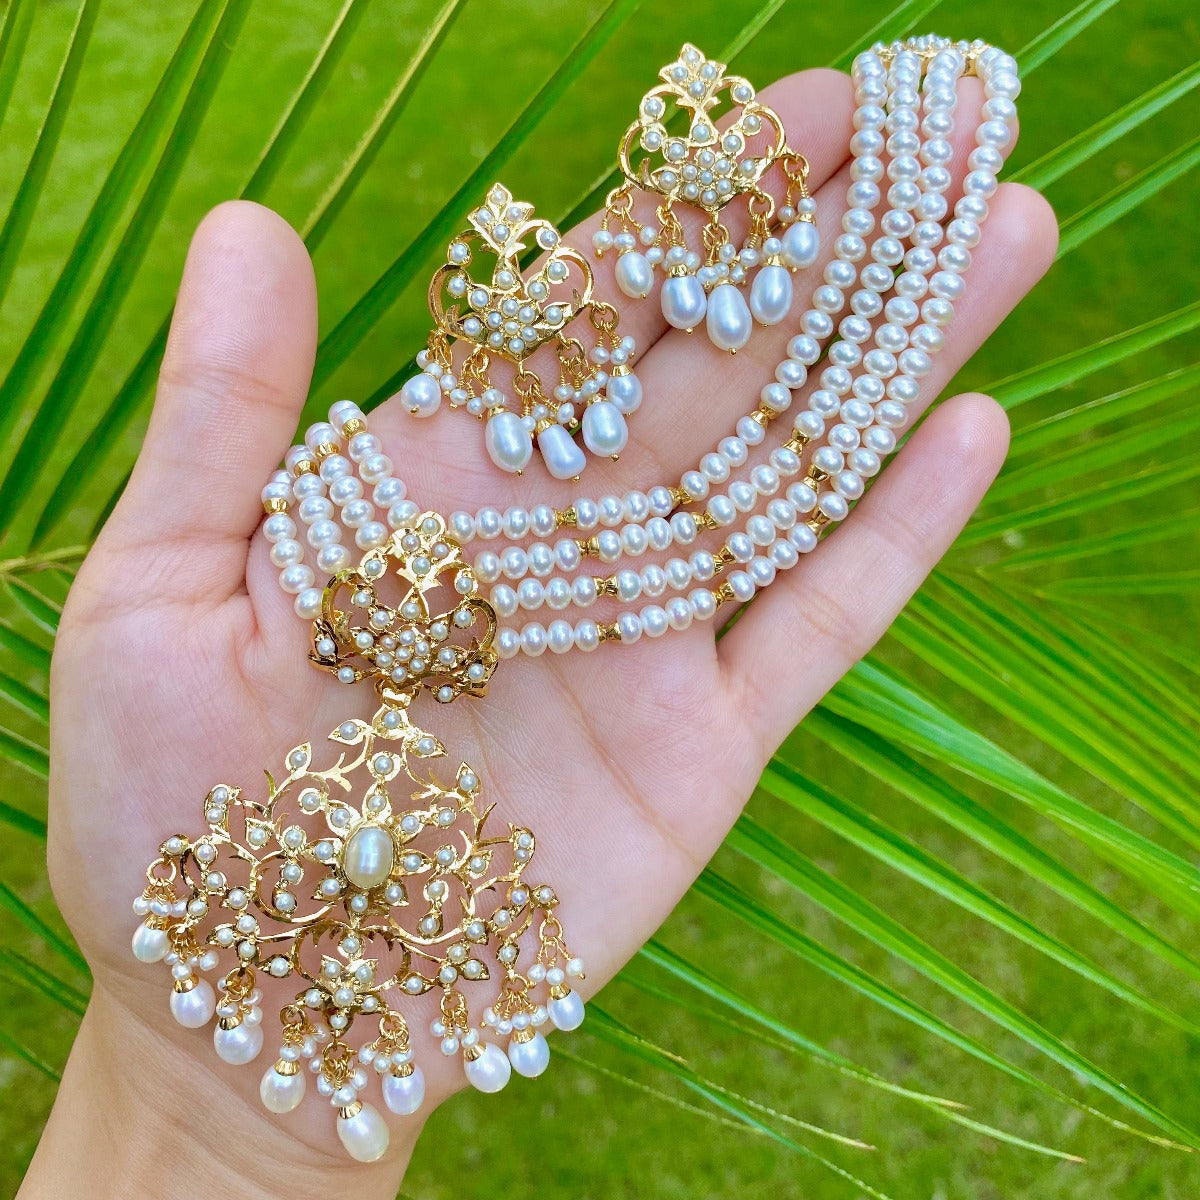 punjabi traditional jewelry in pearls